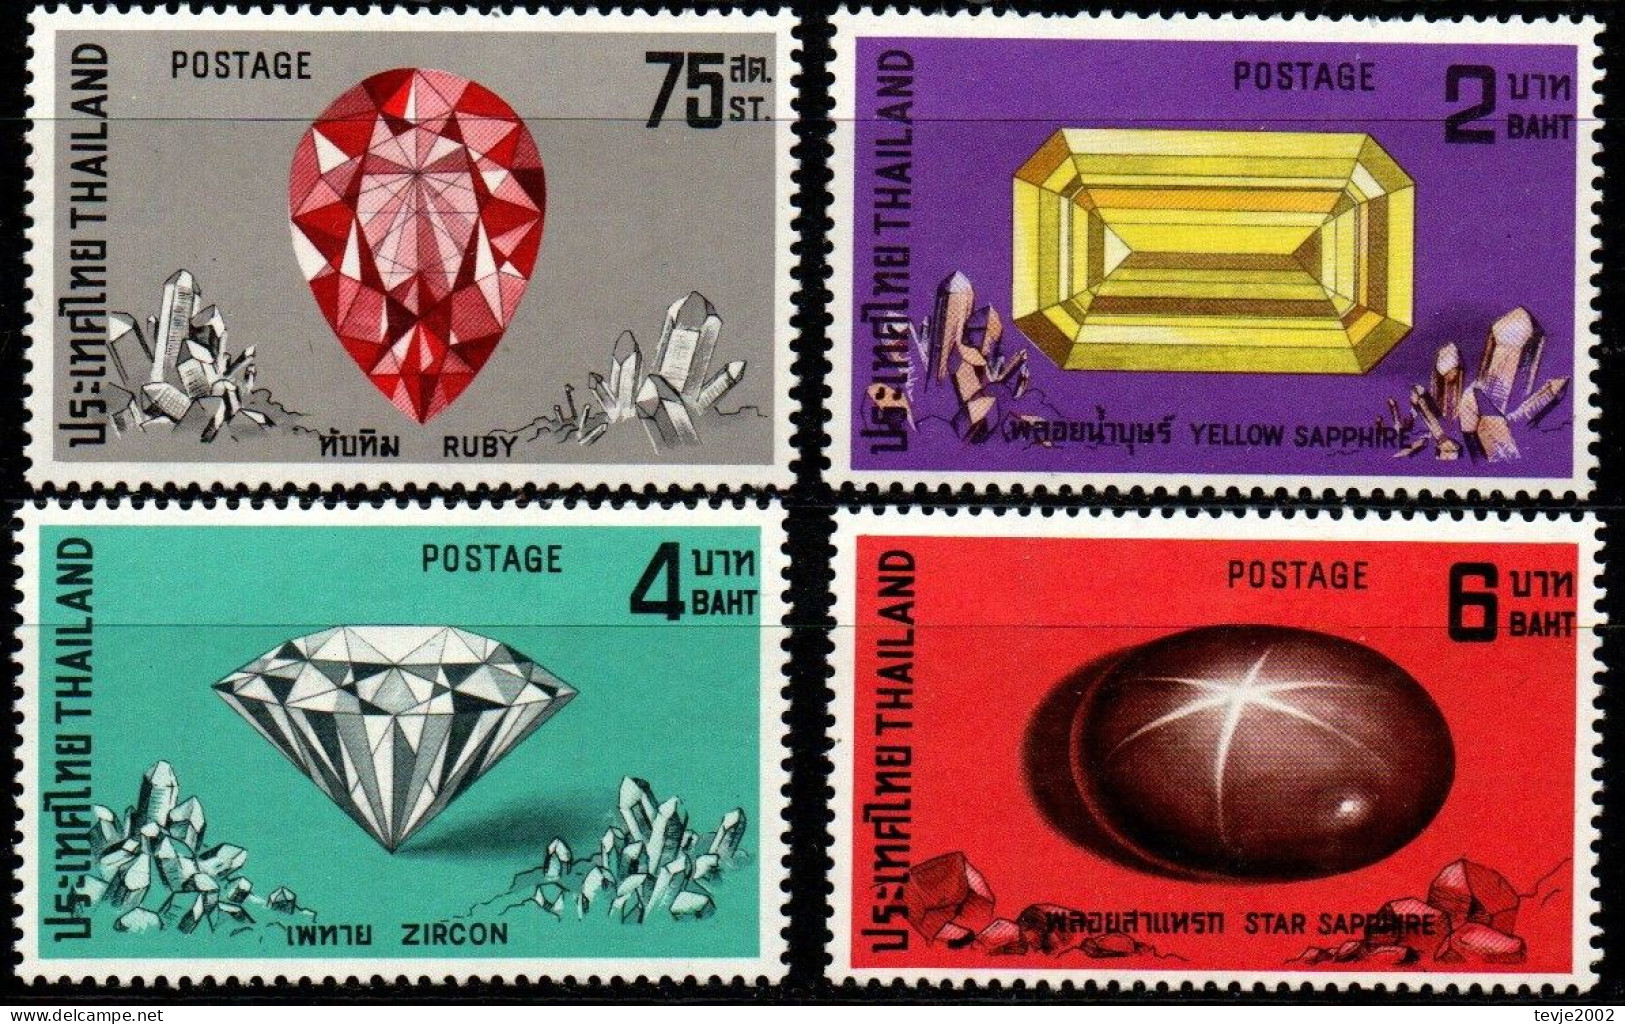 Thailand 1972 - Mi.Nr. 634 - 637 - Postfrisch MNH - Mineralien Minerals Edelsteine (siehe Beschreibung) - Minéraux